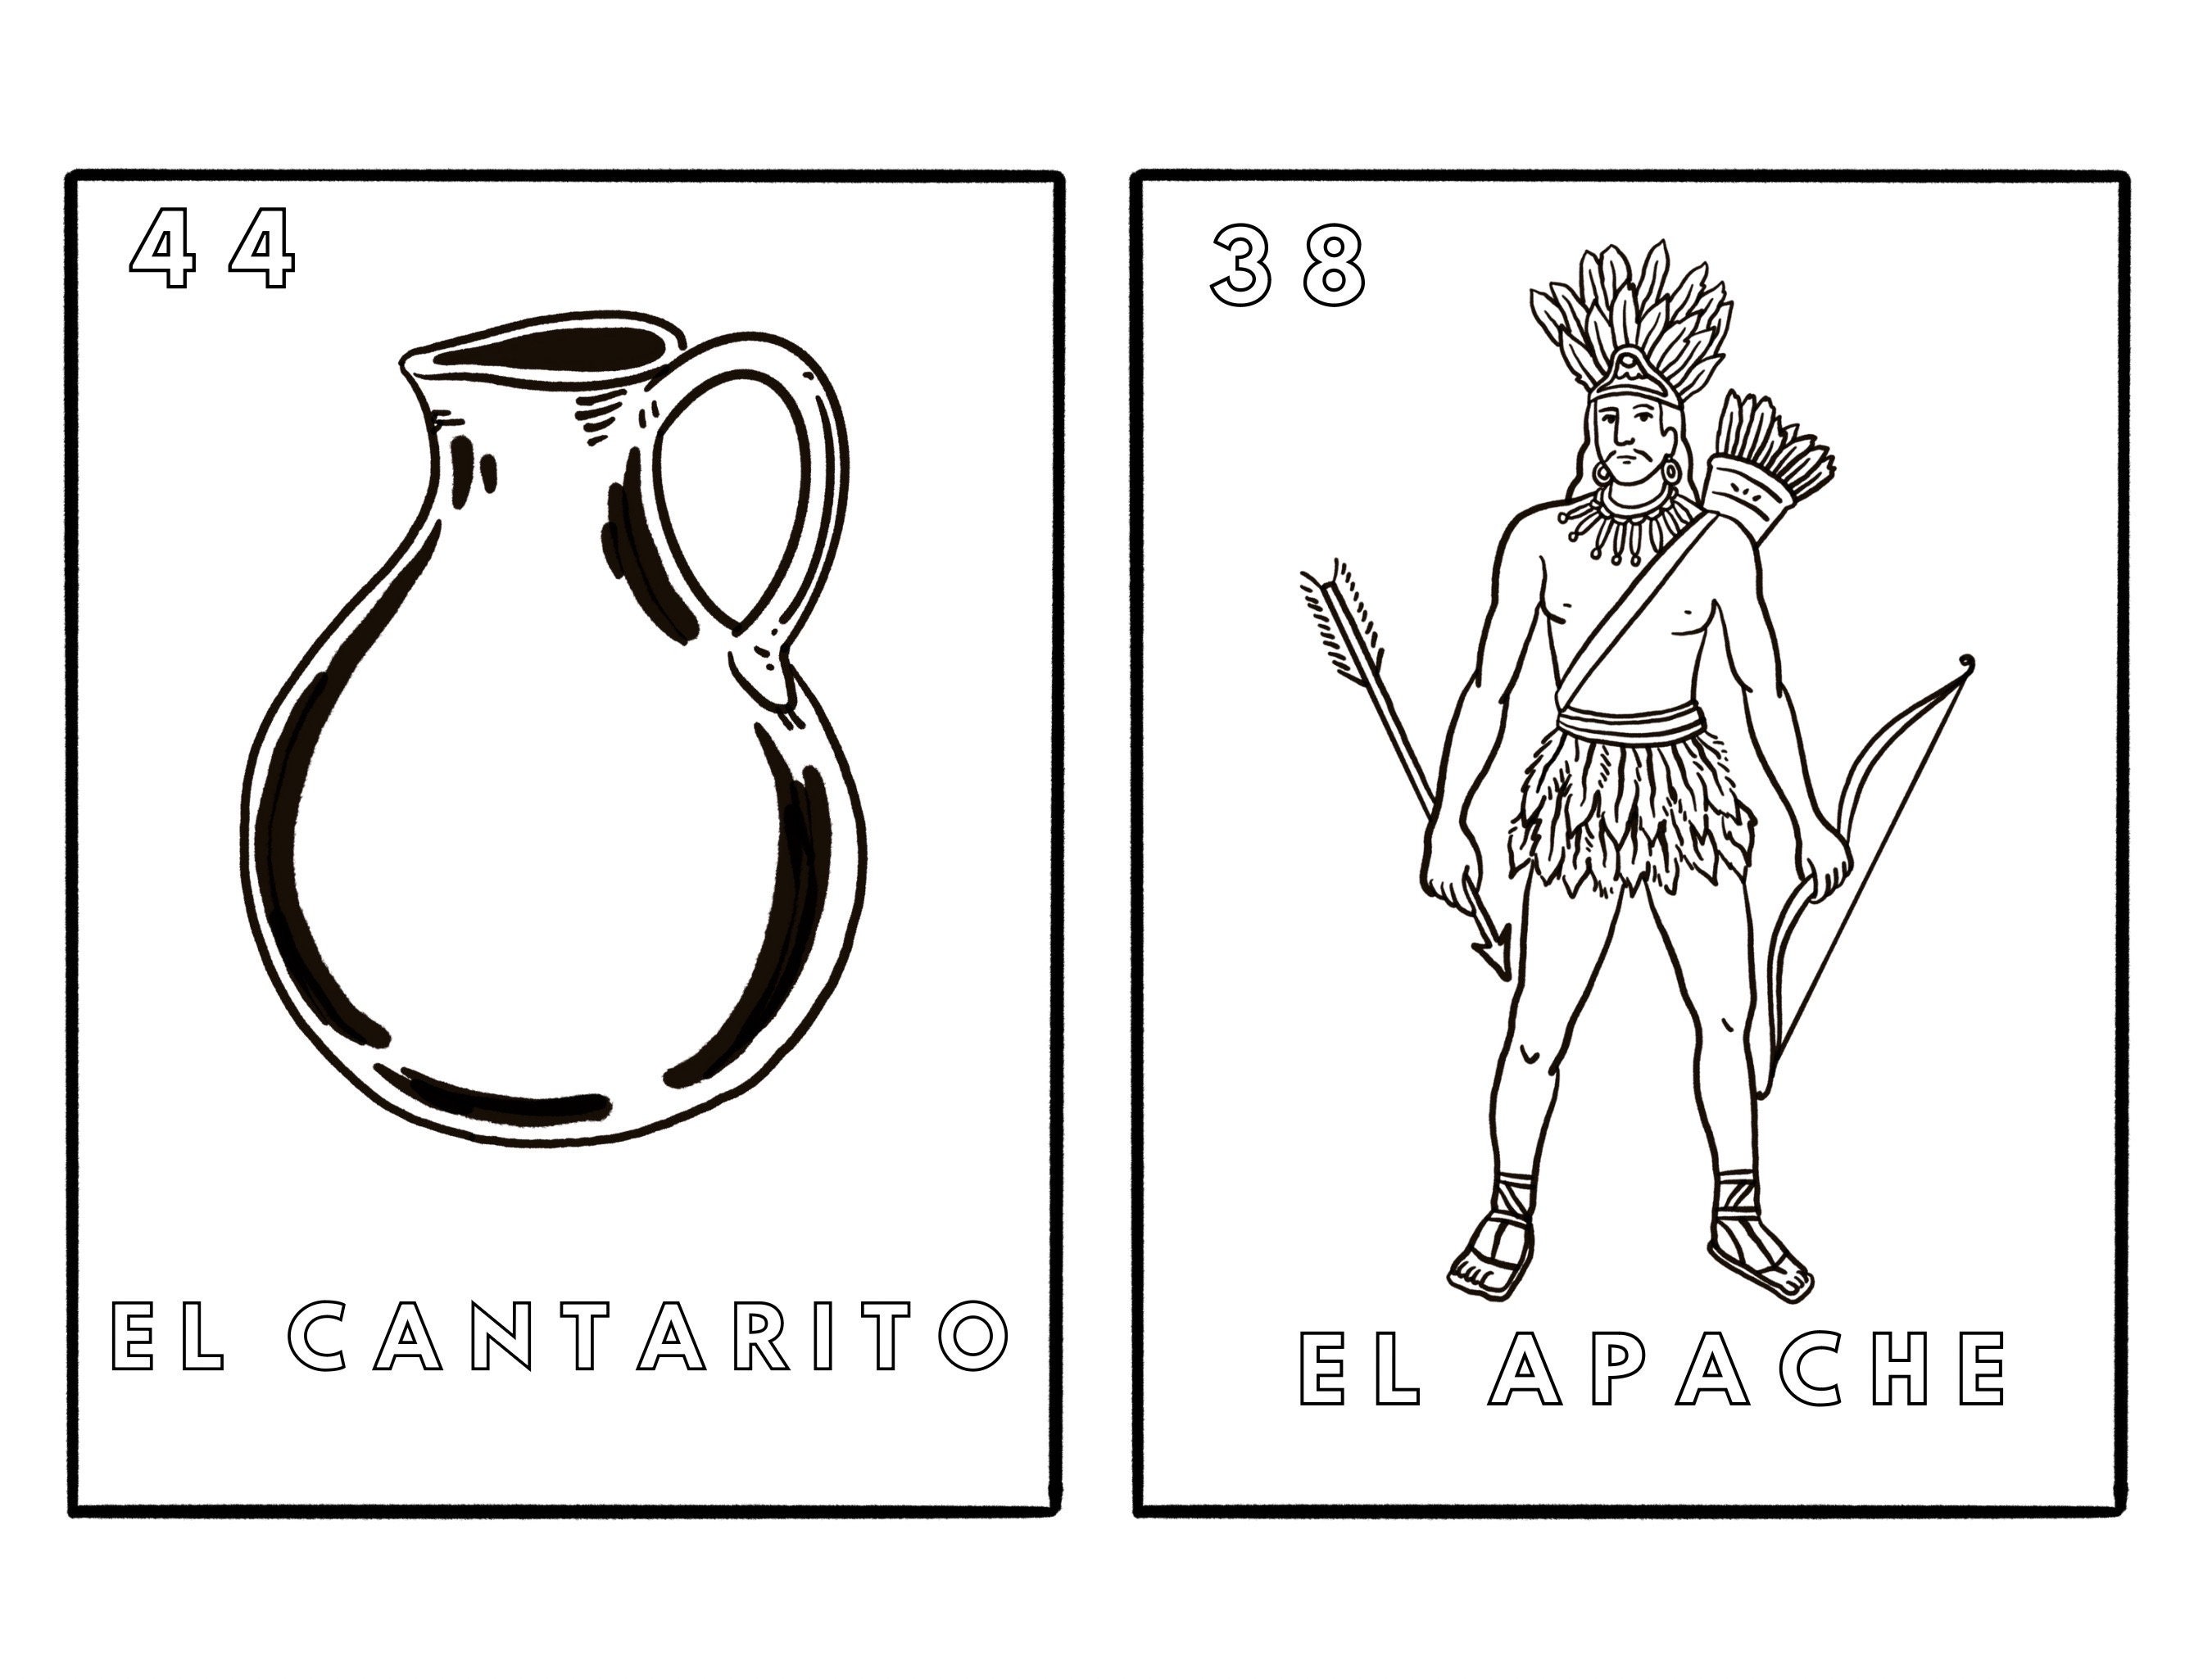 Lotería de Harry Potter | Juego de azar de Loteria Mexicana tradicional |  Juego de estilo bingo con ilustraciones e ilustraciones personalizadas de